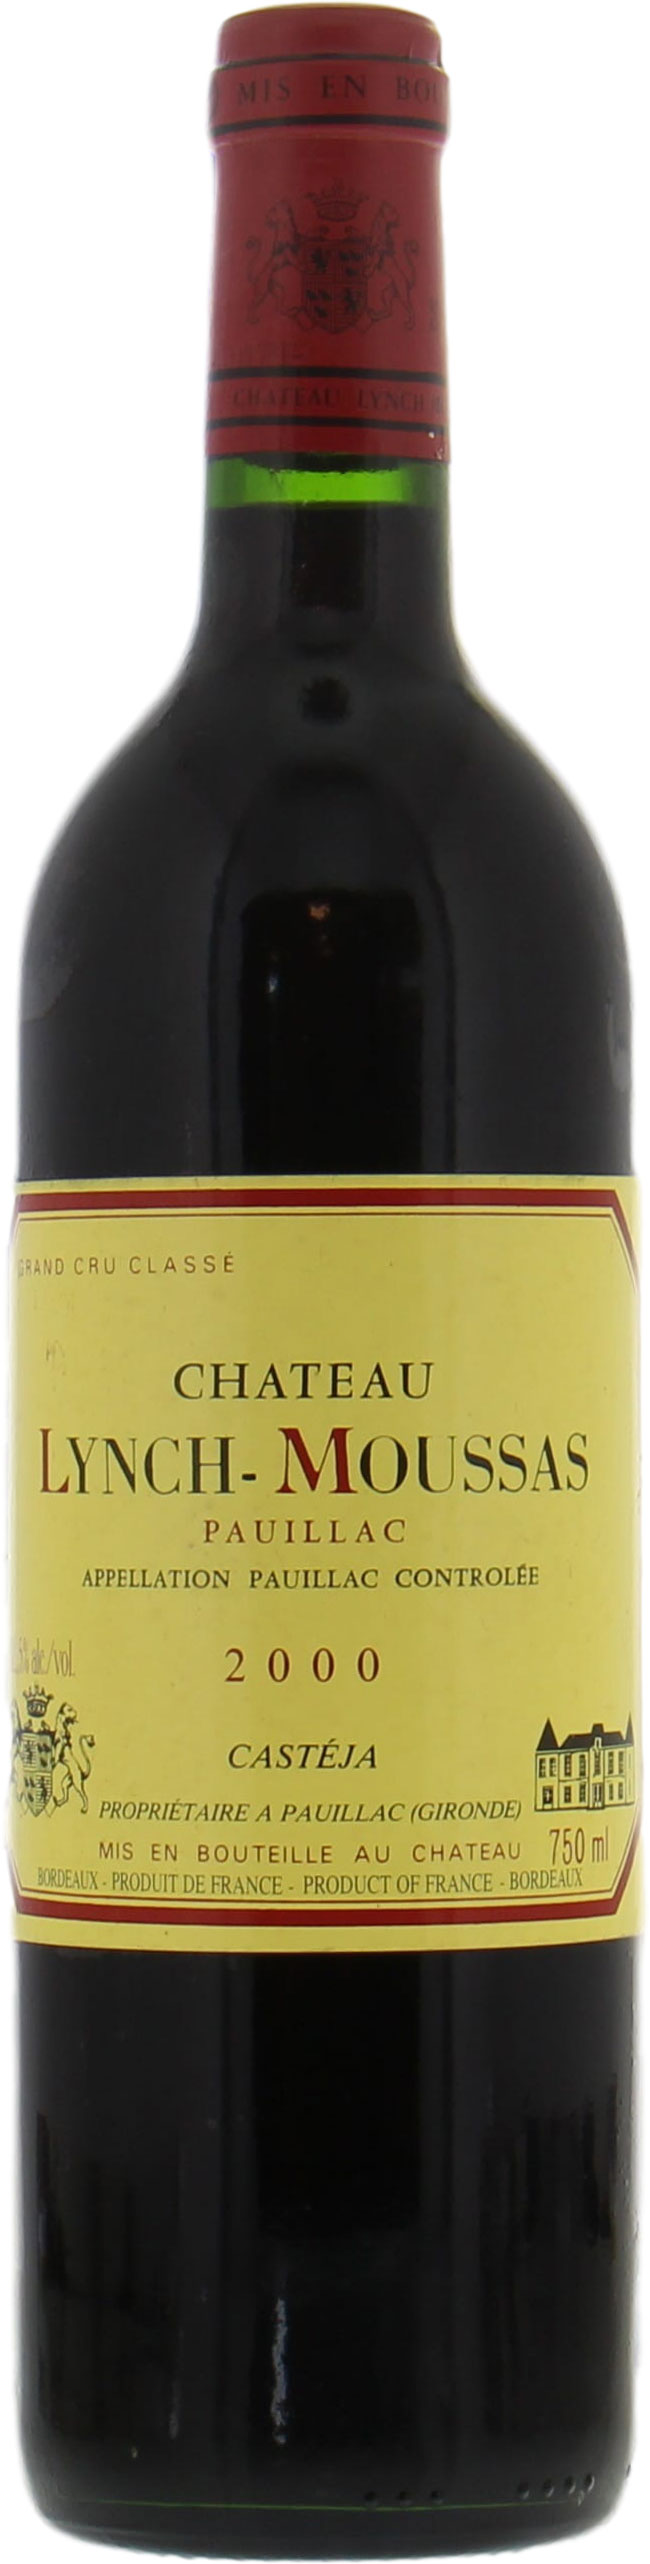 Chateau Lynch-Moussas - Chateau Lynch-Moussas 2000 Perfect